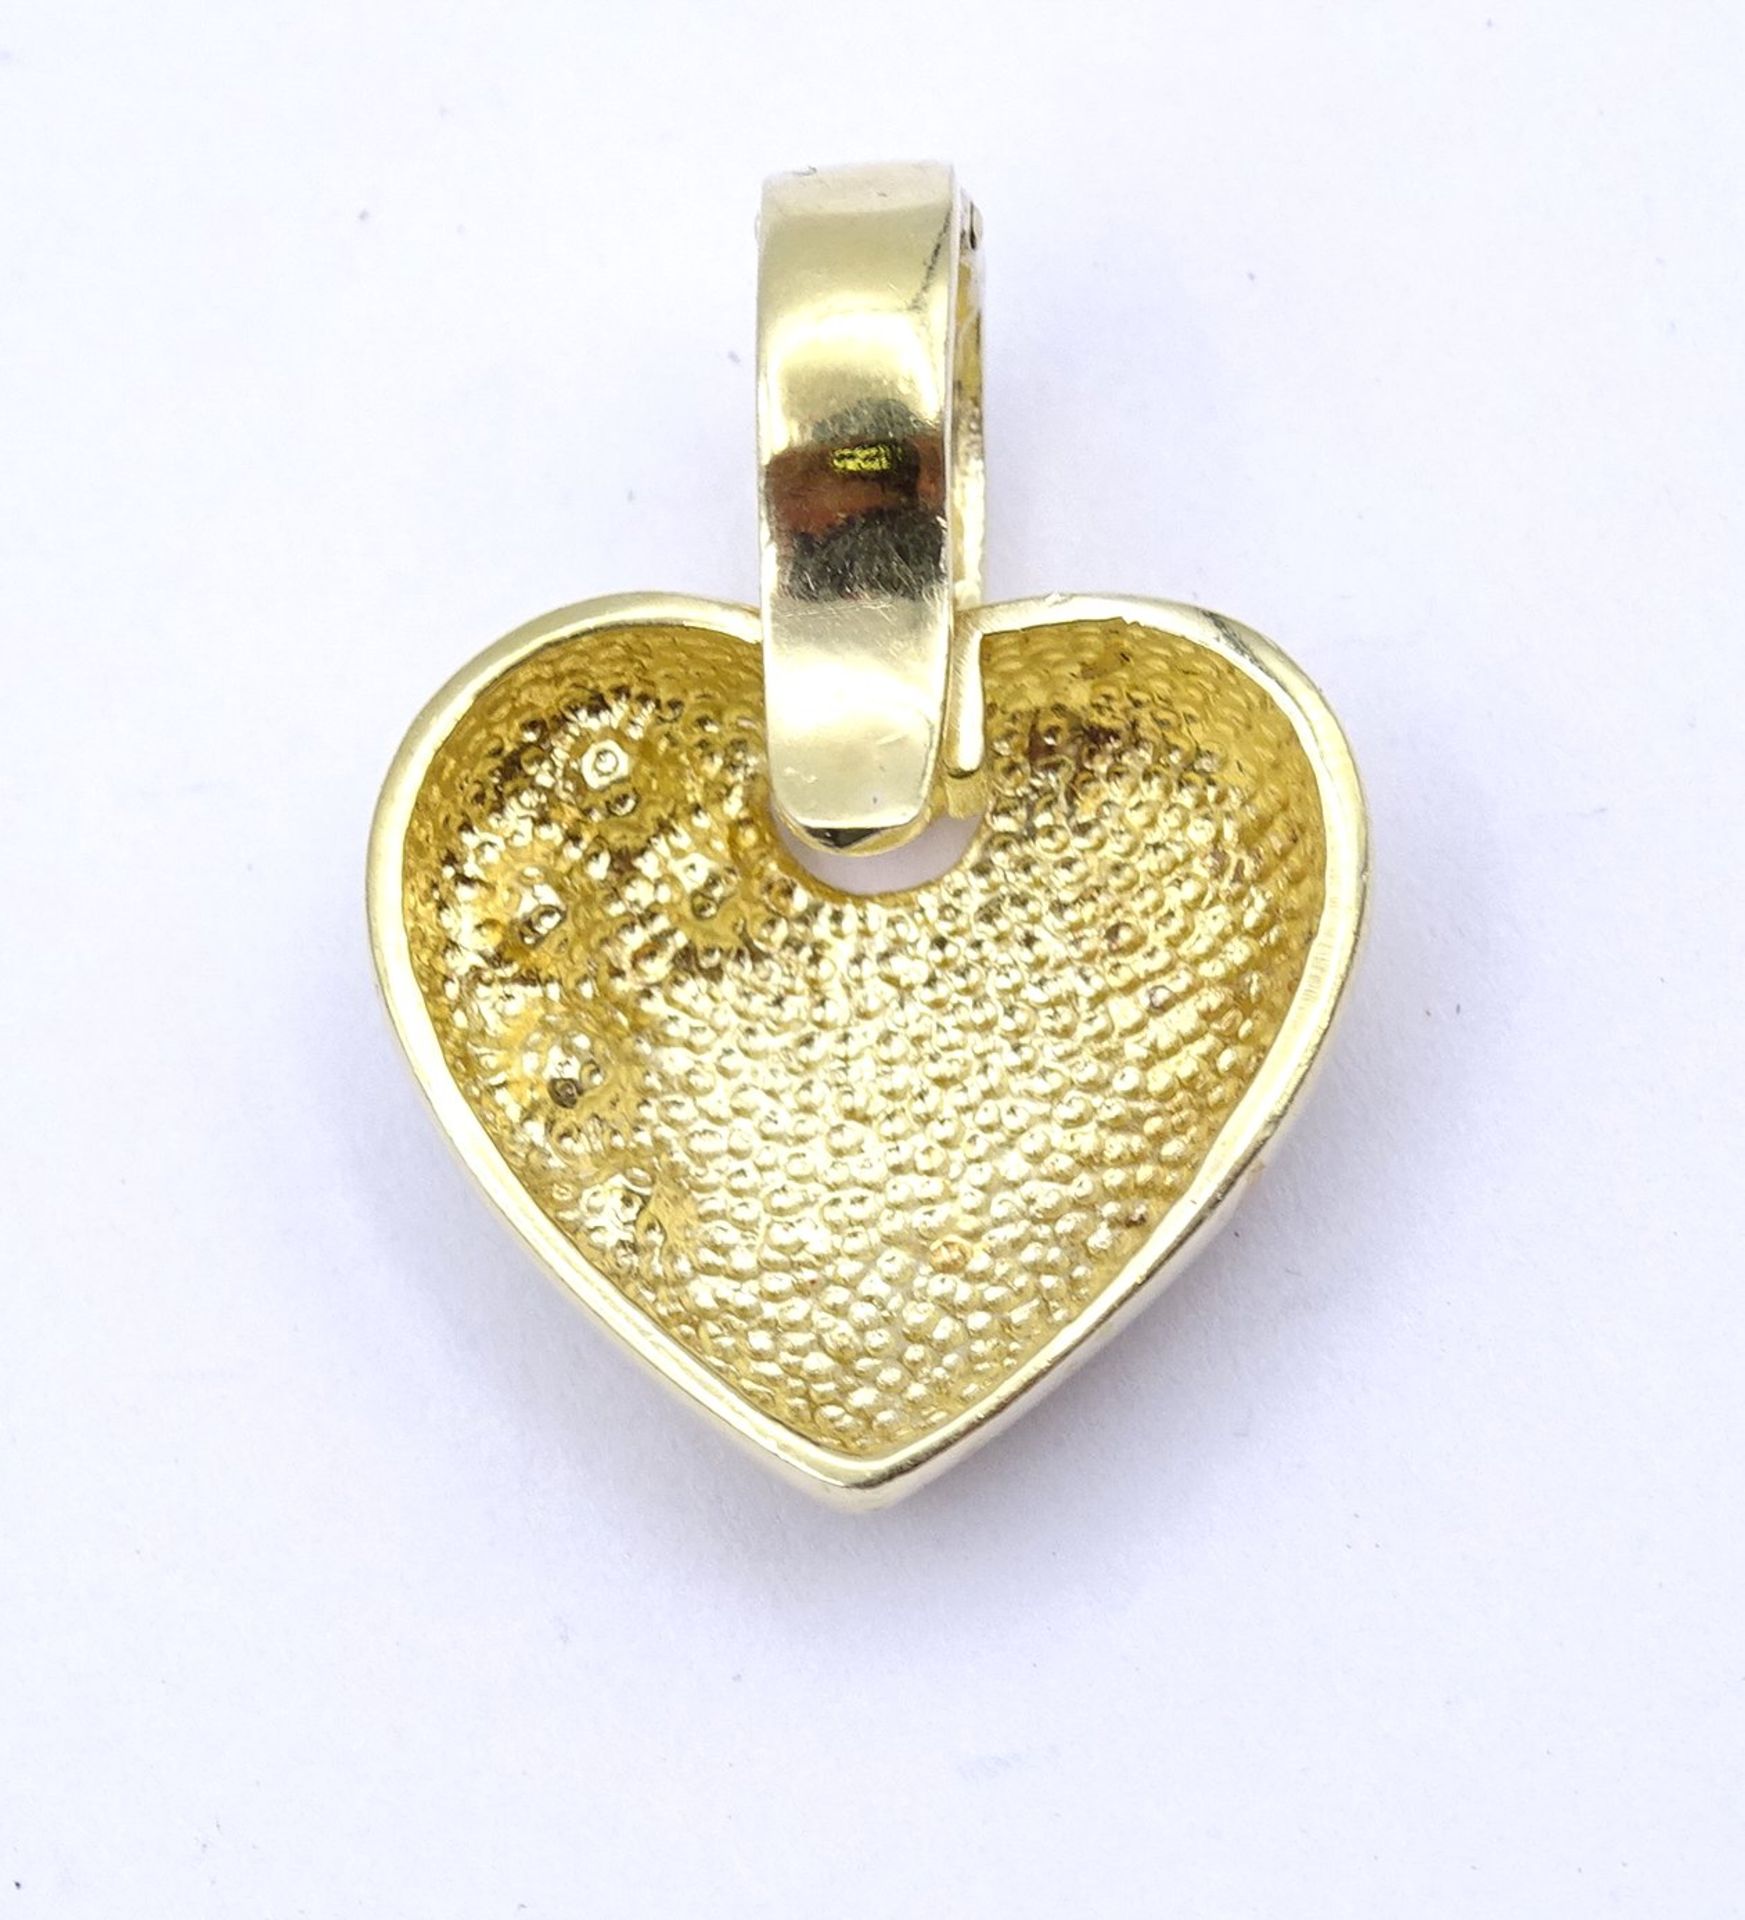 Herzförmiger Anhänger mit klaren Steinen, Silber 925 - vergoldet, 6,5g., 2,7x2,0cm, etwas berieben - Image 3 of 3